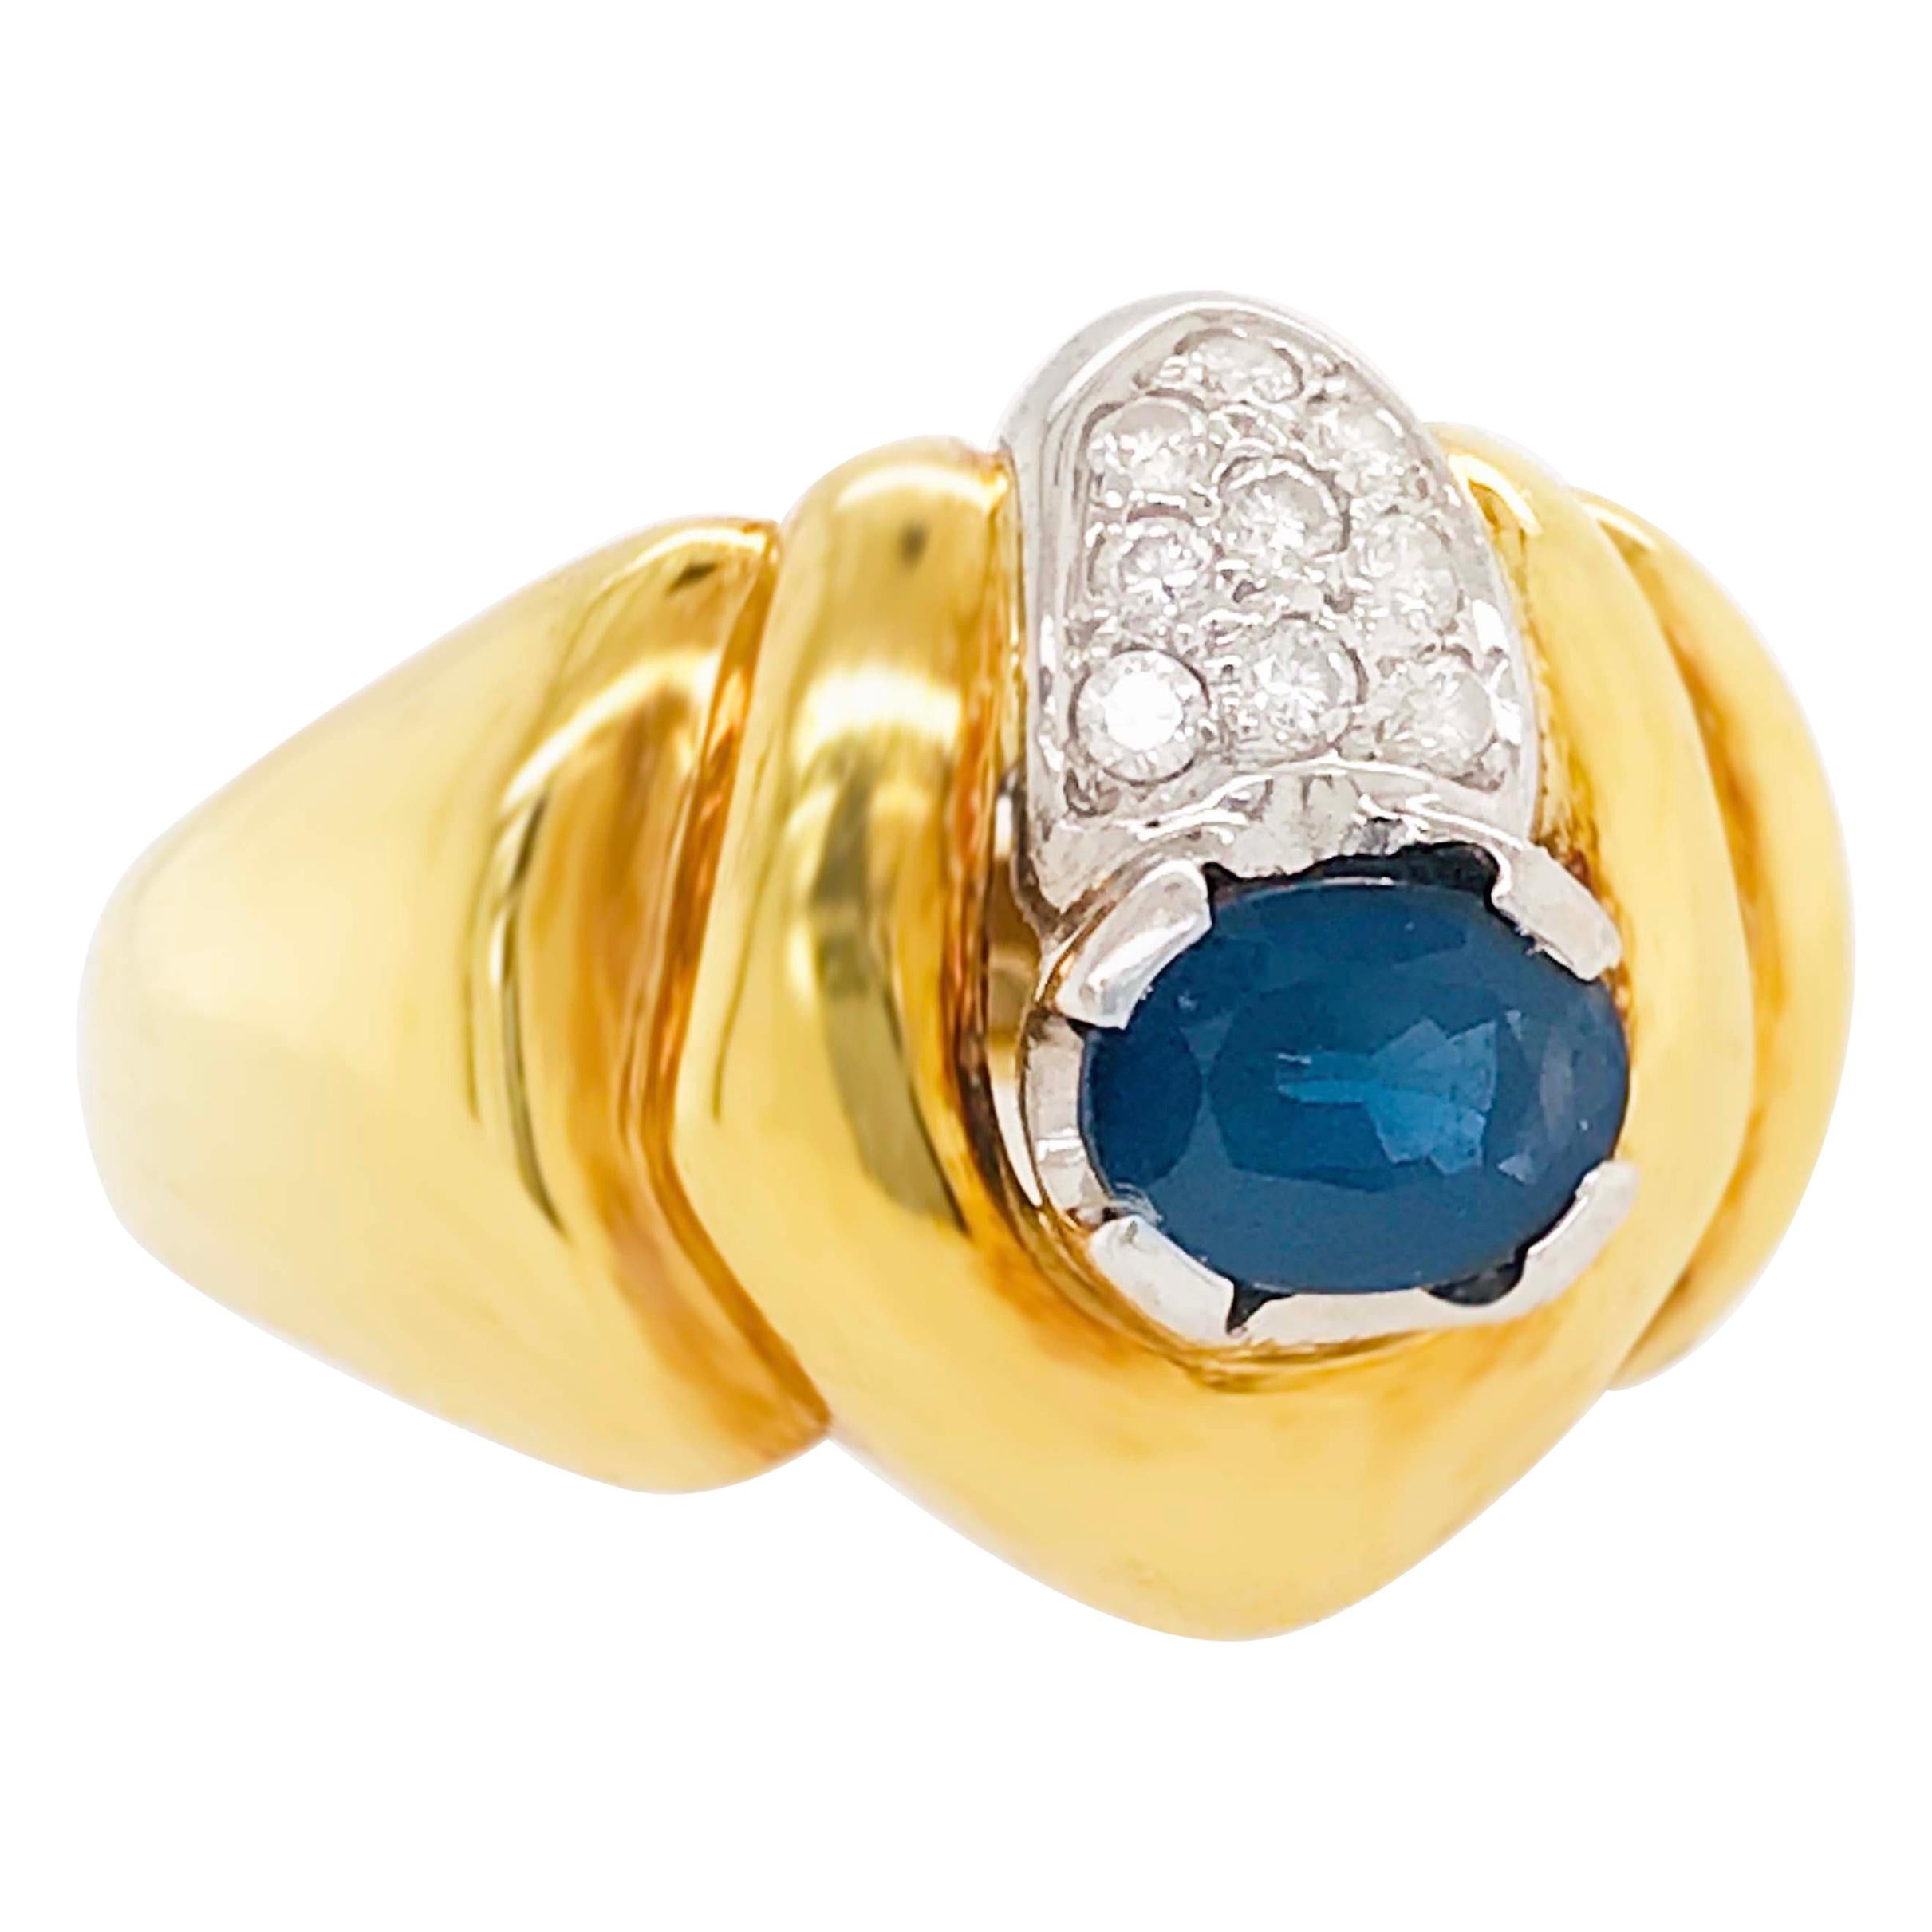 Bague fantaisie en or jaune 18 carats avec saphirs et diamants, bague dôme en or 18 carats bleu